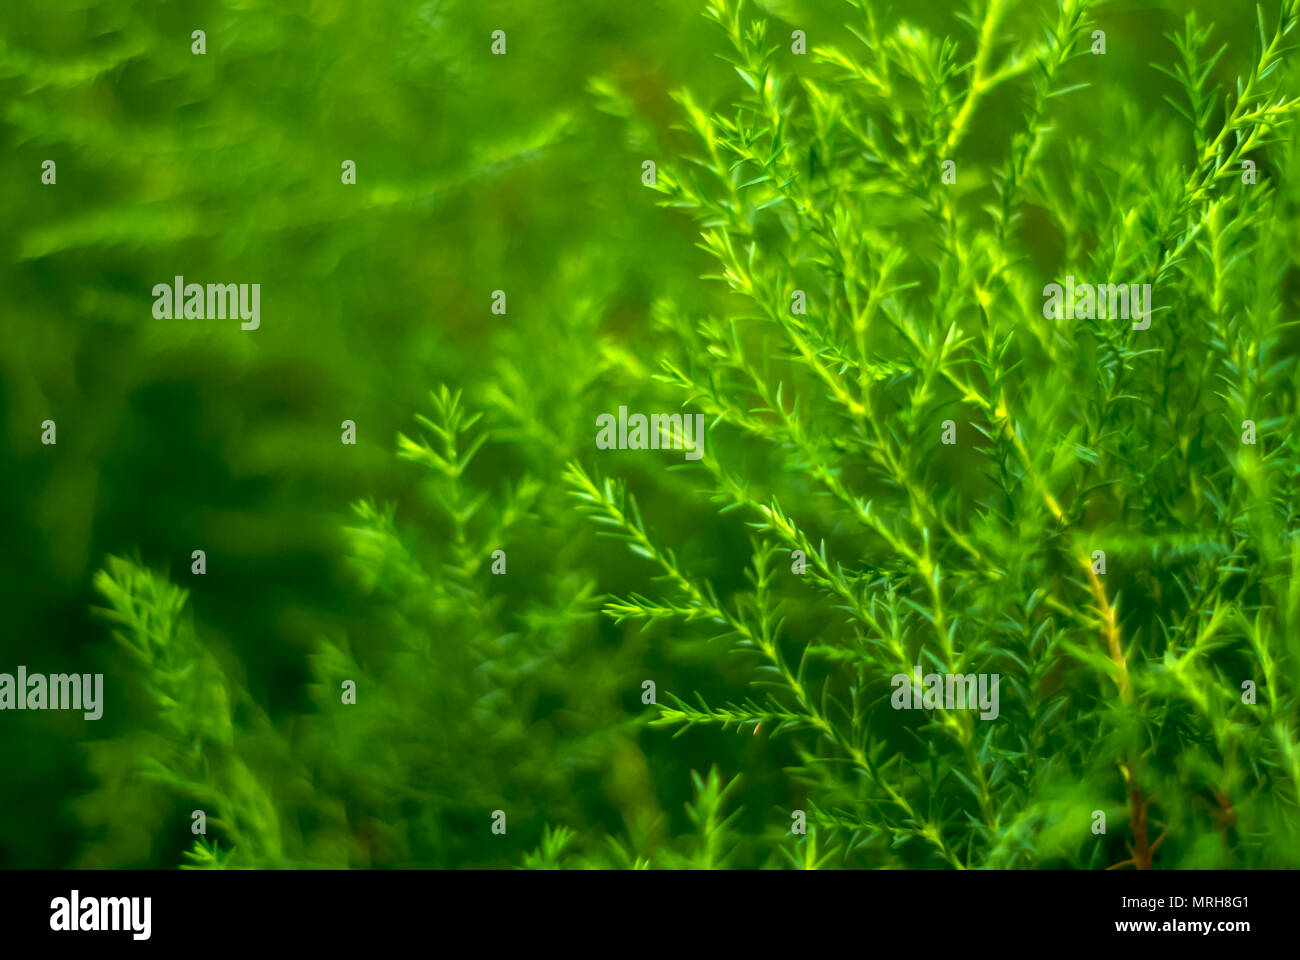 Verschwommenes grün Abstrakt floral background der natürlichen Zweige von tropischen Pflanzen mit winzigen Blätter, erinnert an Spargel oder Algen Stockfoto